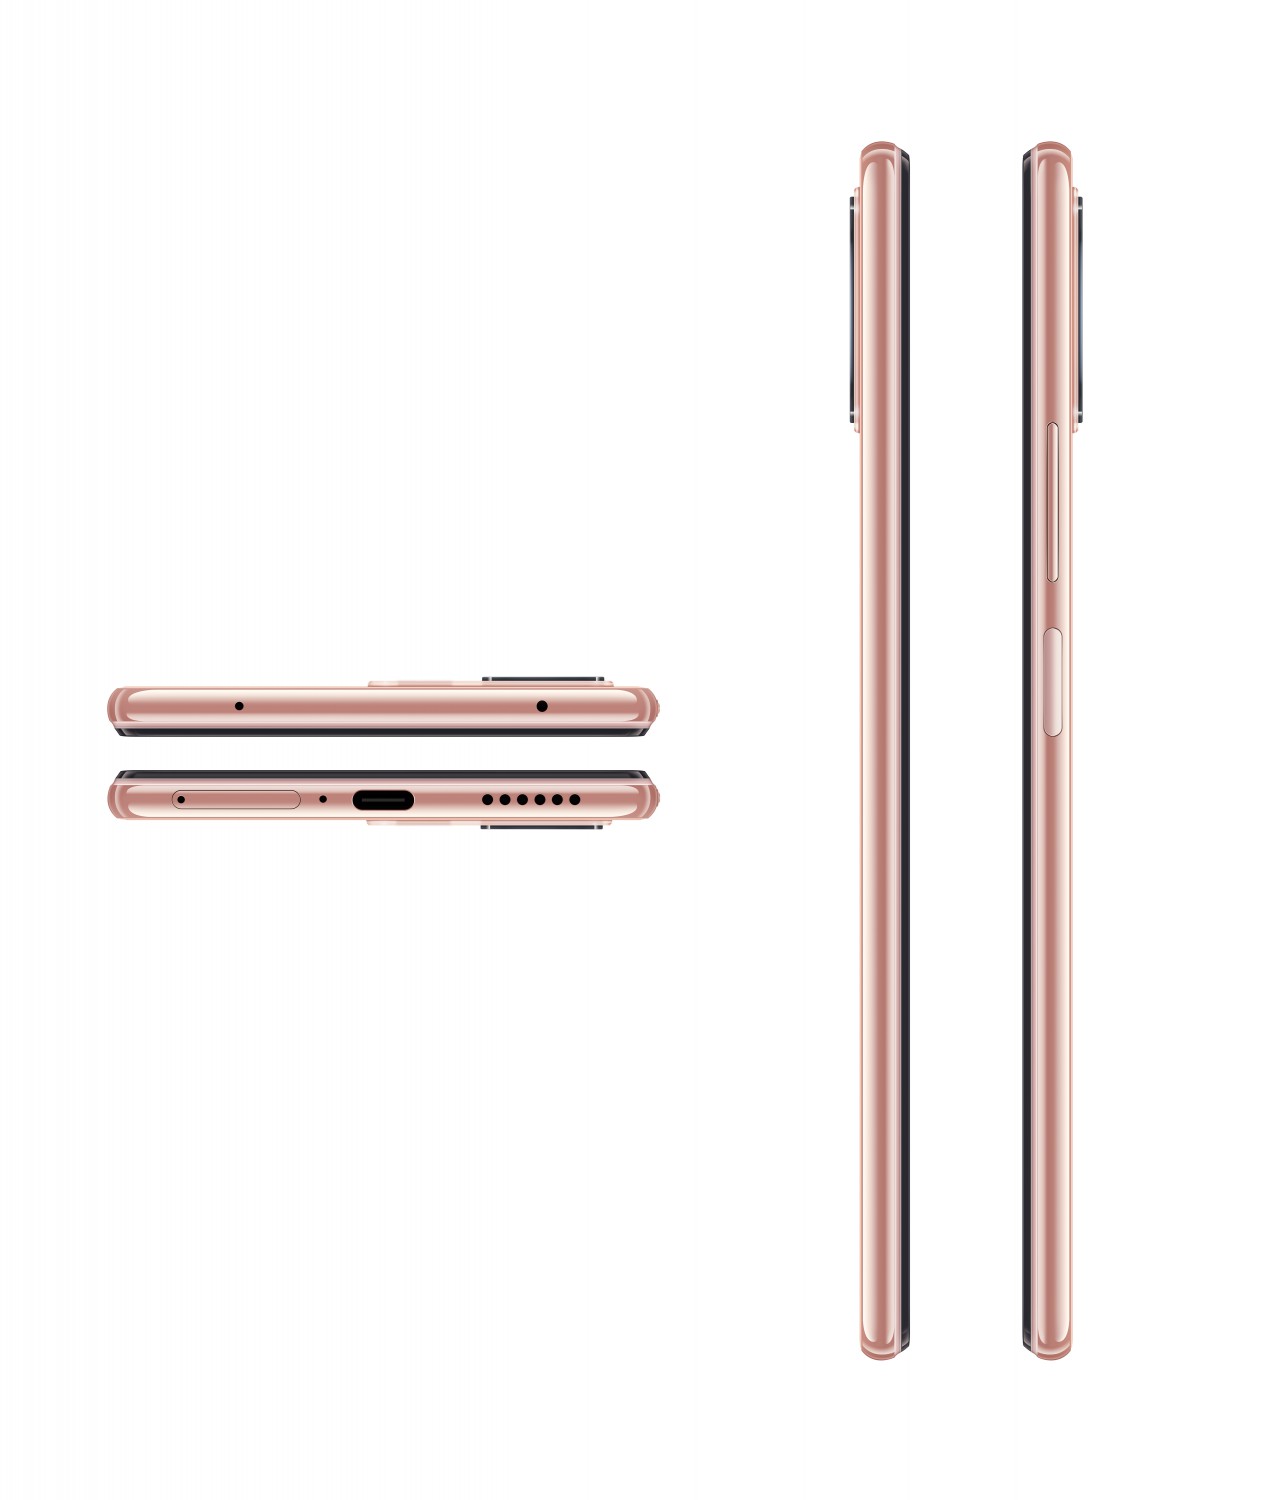 Xiaomi Mi 11 lite 5G NE 6GB/128GB růžová